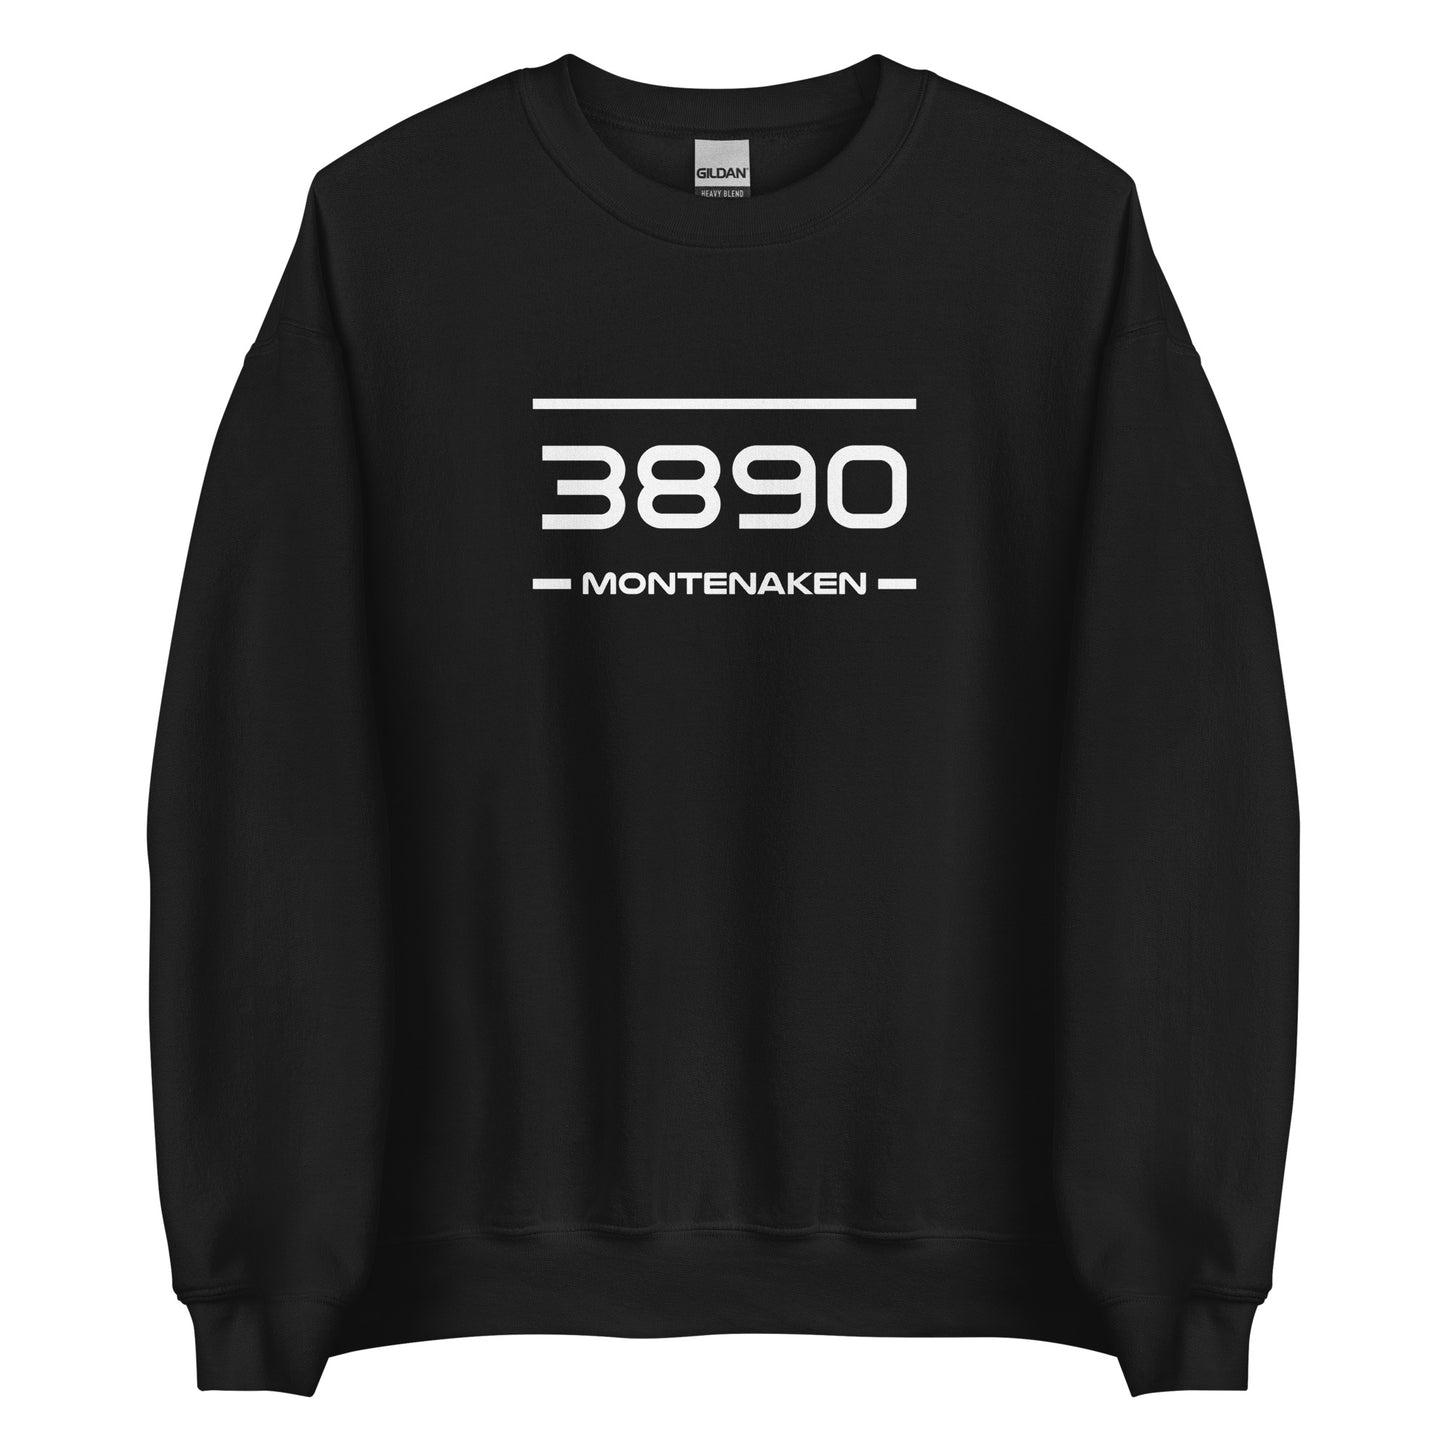 Sweater - 3890 - Montenaken (M/V)